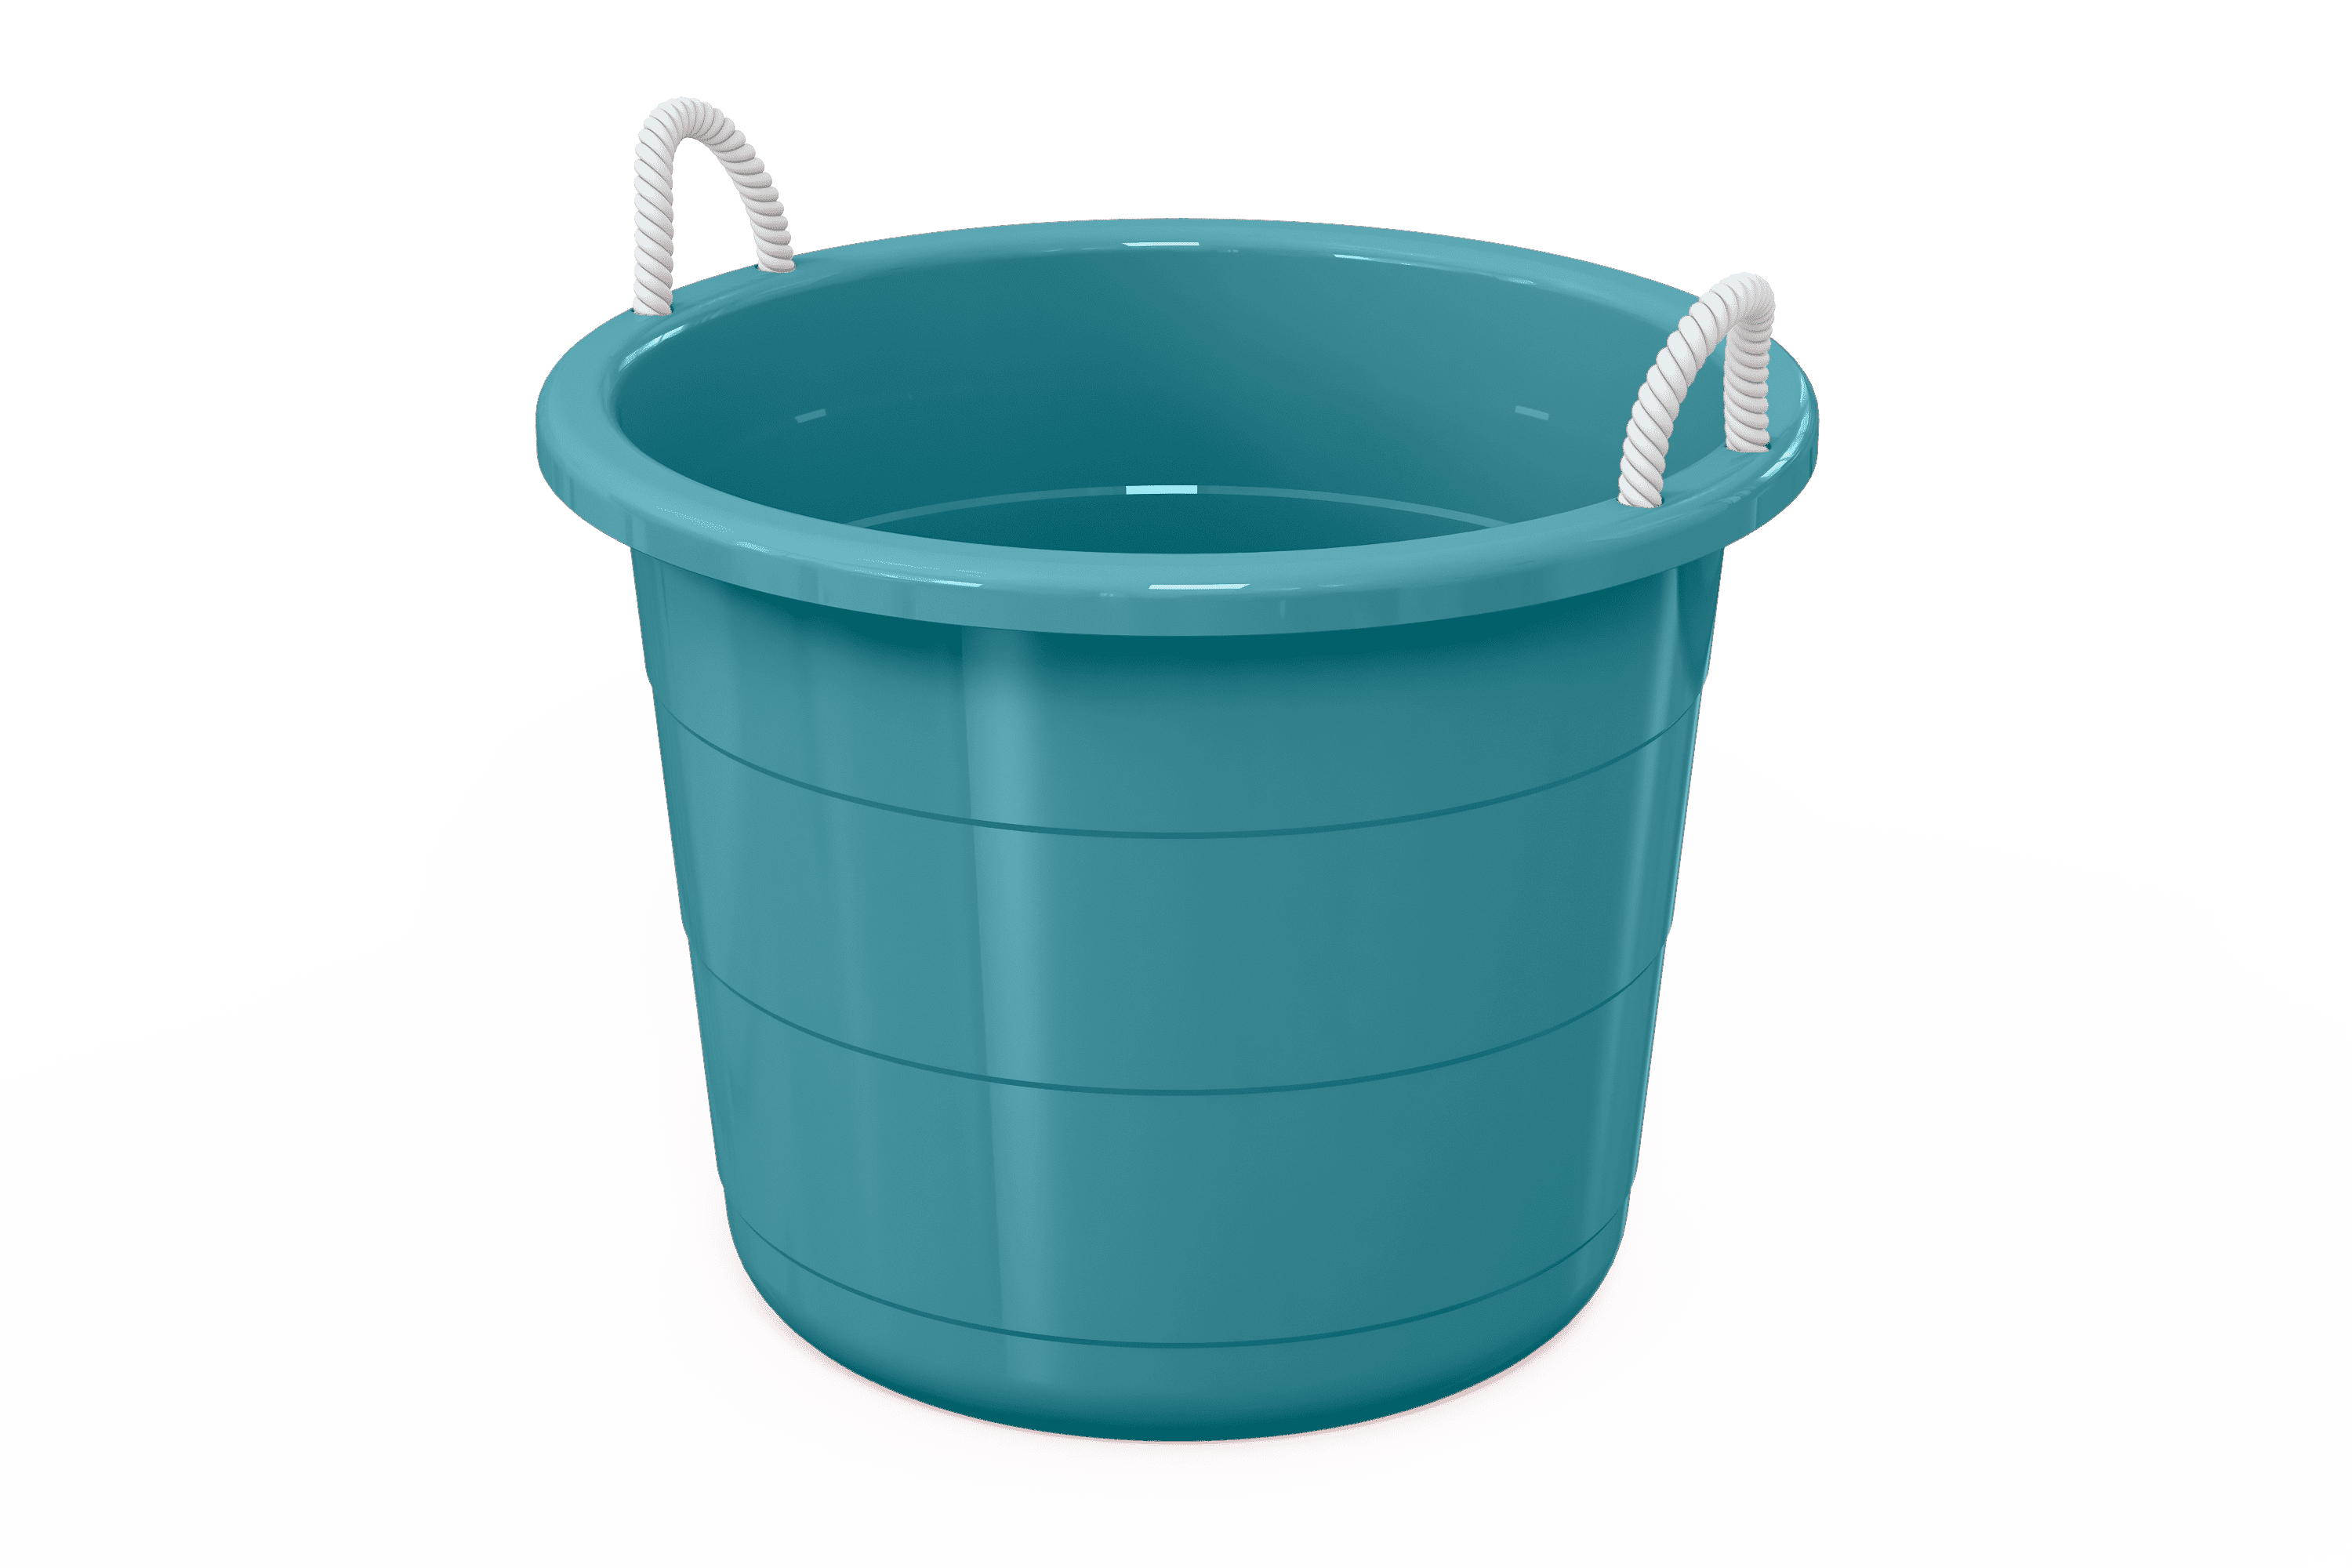 FLEXTUB plastic tub No. 3 (10.5 Gal.)